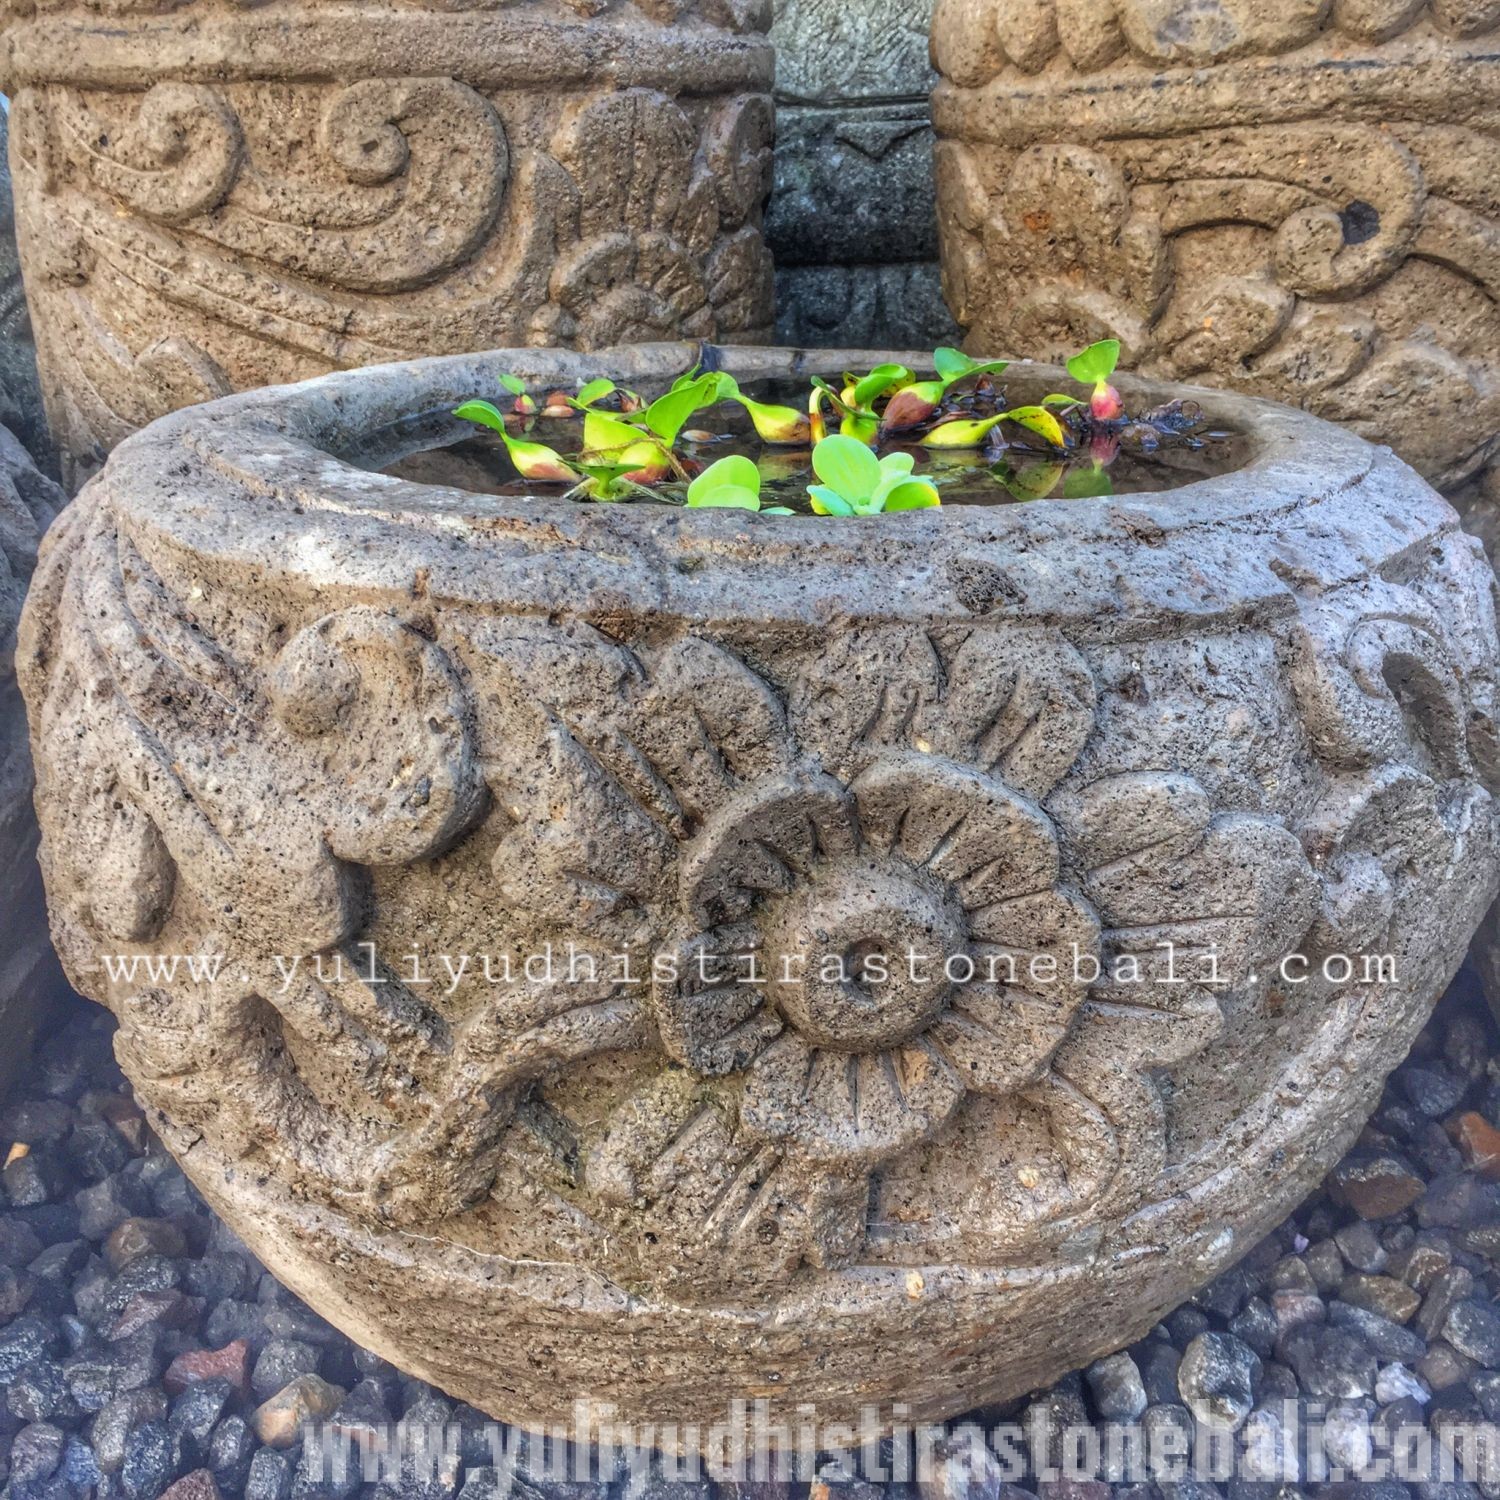 Bali Pots and Bowl Yuli Yudhistira 